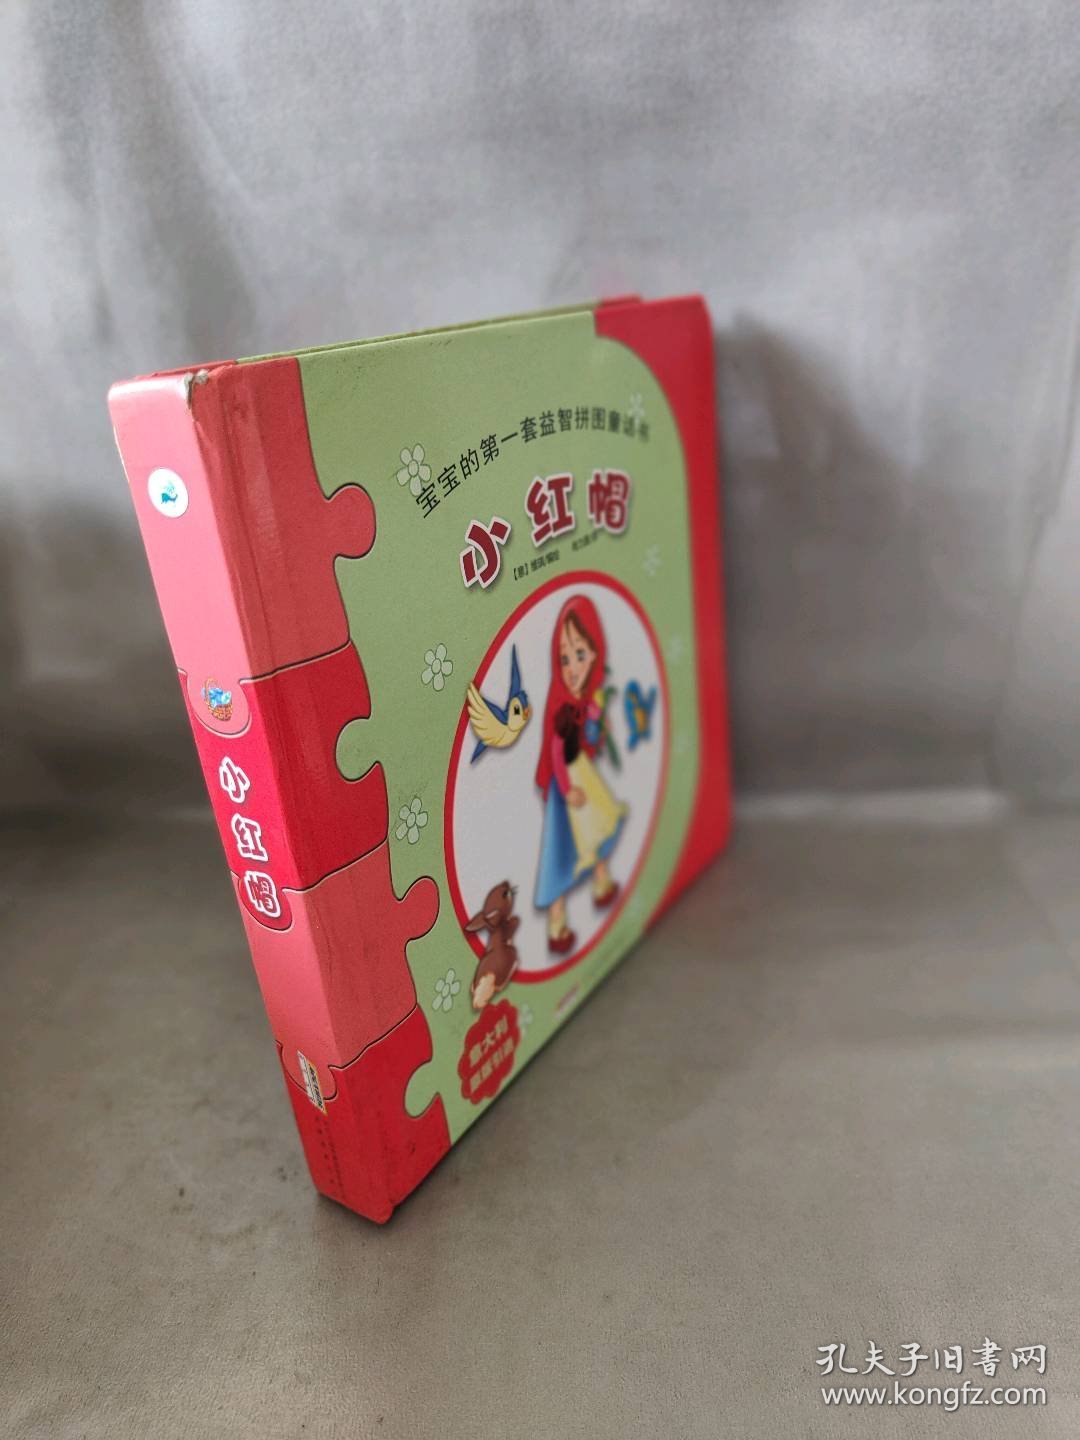 【库存书】宝宝的第一套益智拼图童话书:小红帽